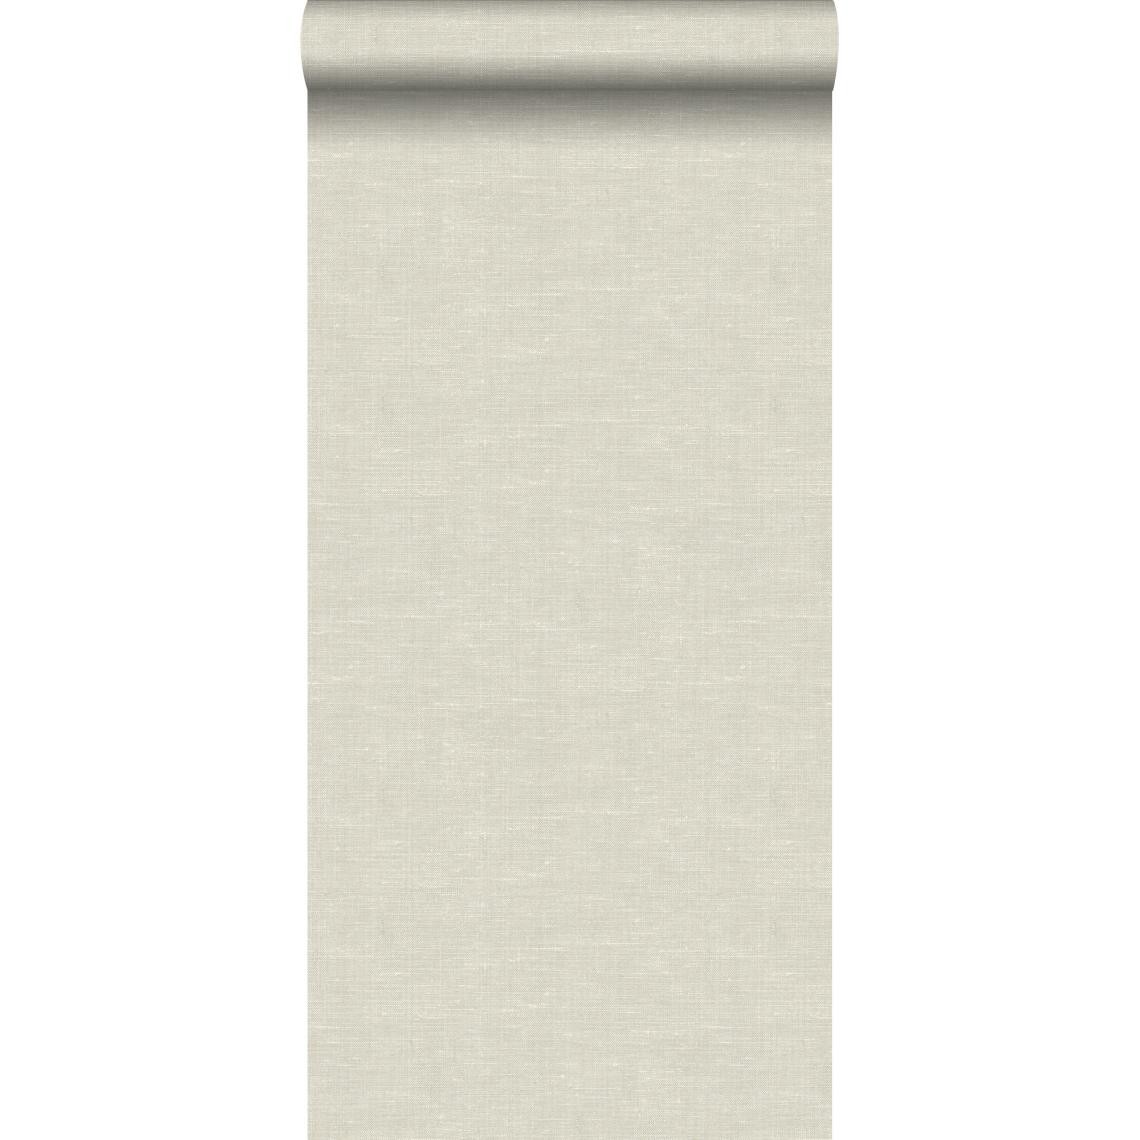 Origin - Origin papier peint structure tissée beige clair - 347631 - 0.53 x 10.05 m - Papier peint